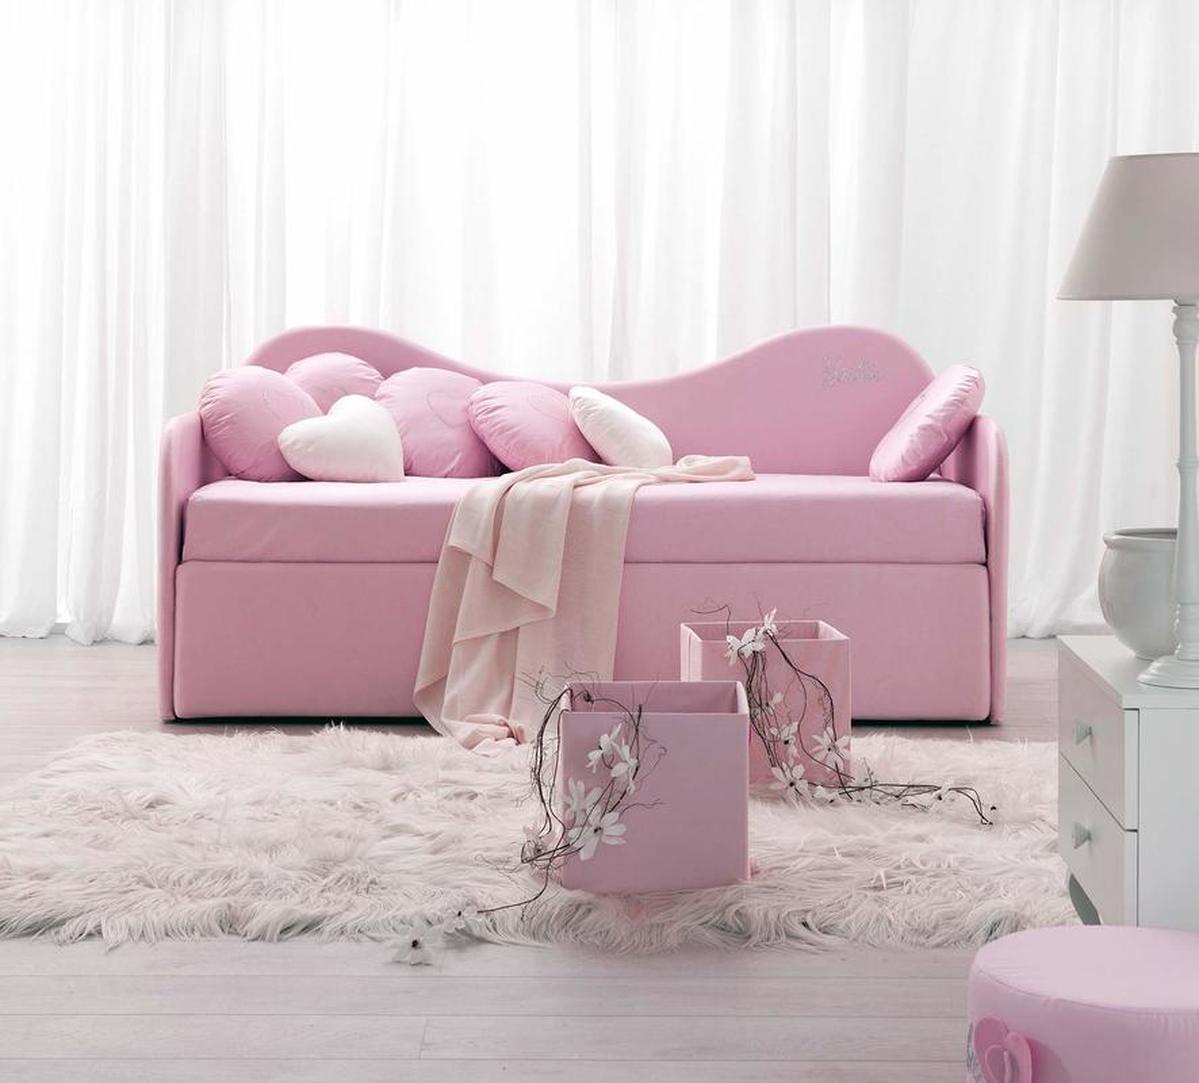 Manuela Mazzanti Barbie room designer: Furniture, textiles, accessories 